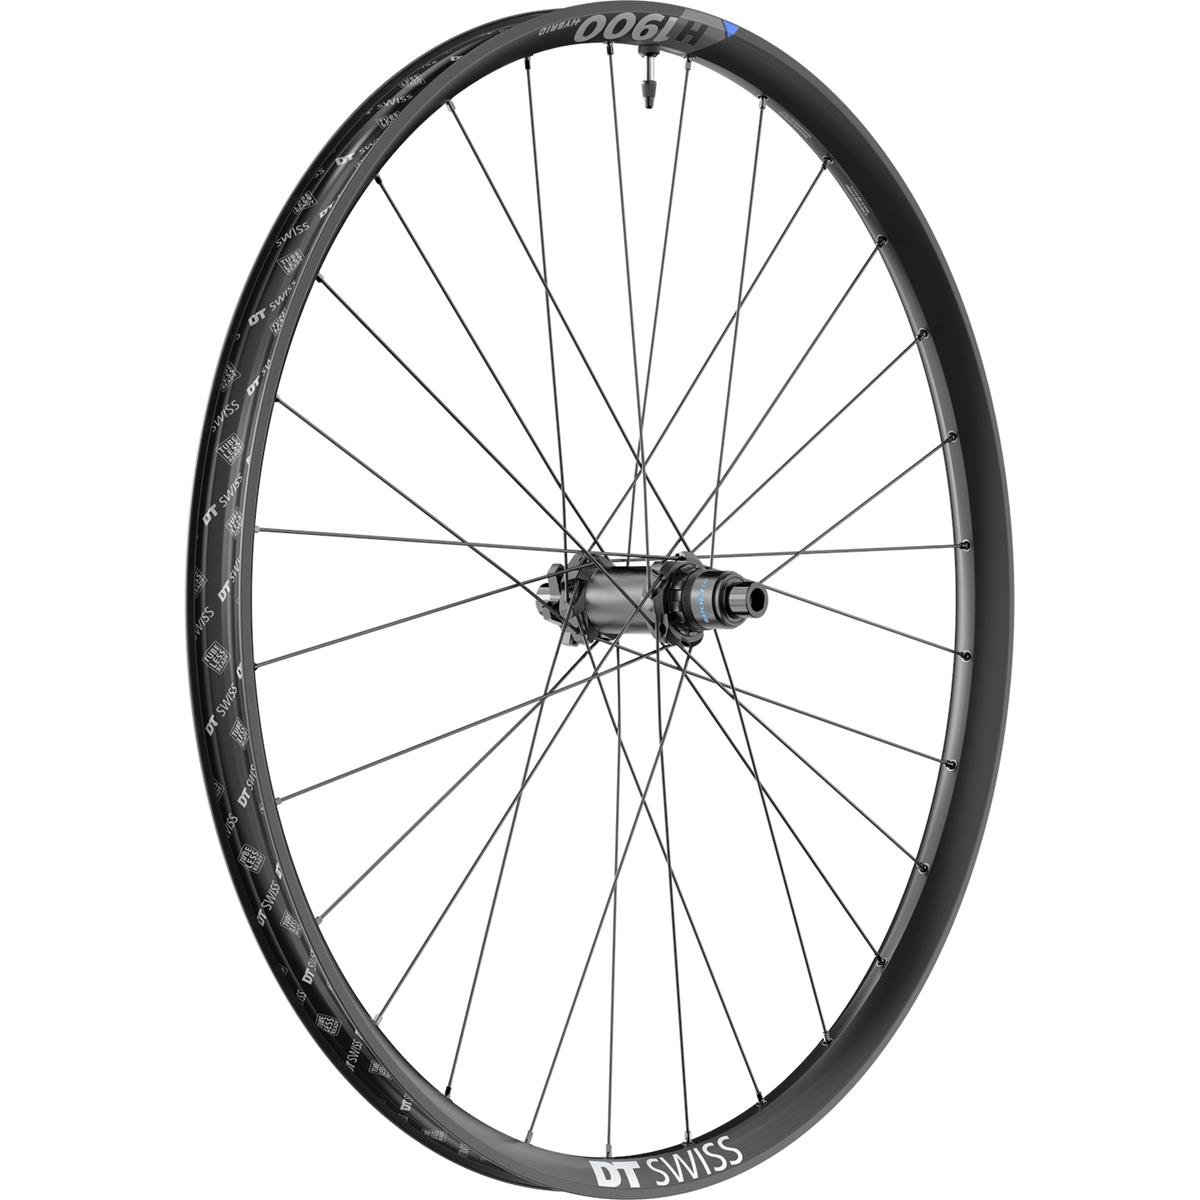 DT Swiss Wheel H 1900 Spline Rear, 29 inch, aluminum, 12x148 mm TA Boost, IS 6-Bolt, Sram XD, 35 mm